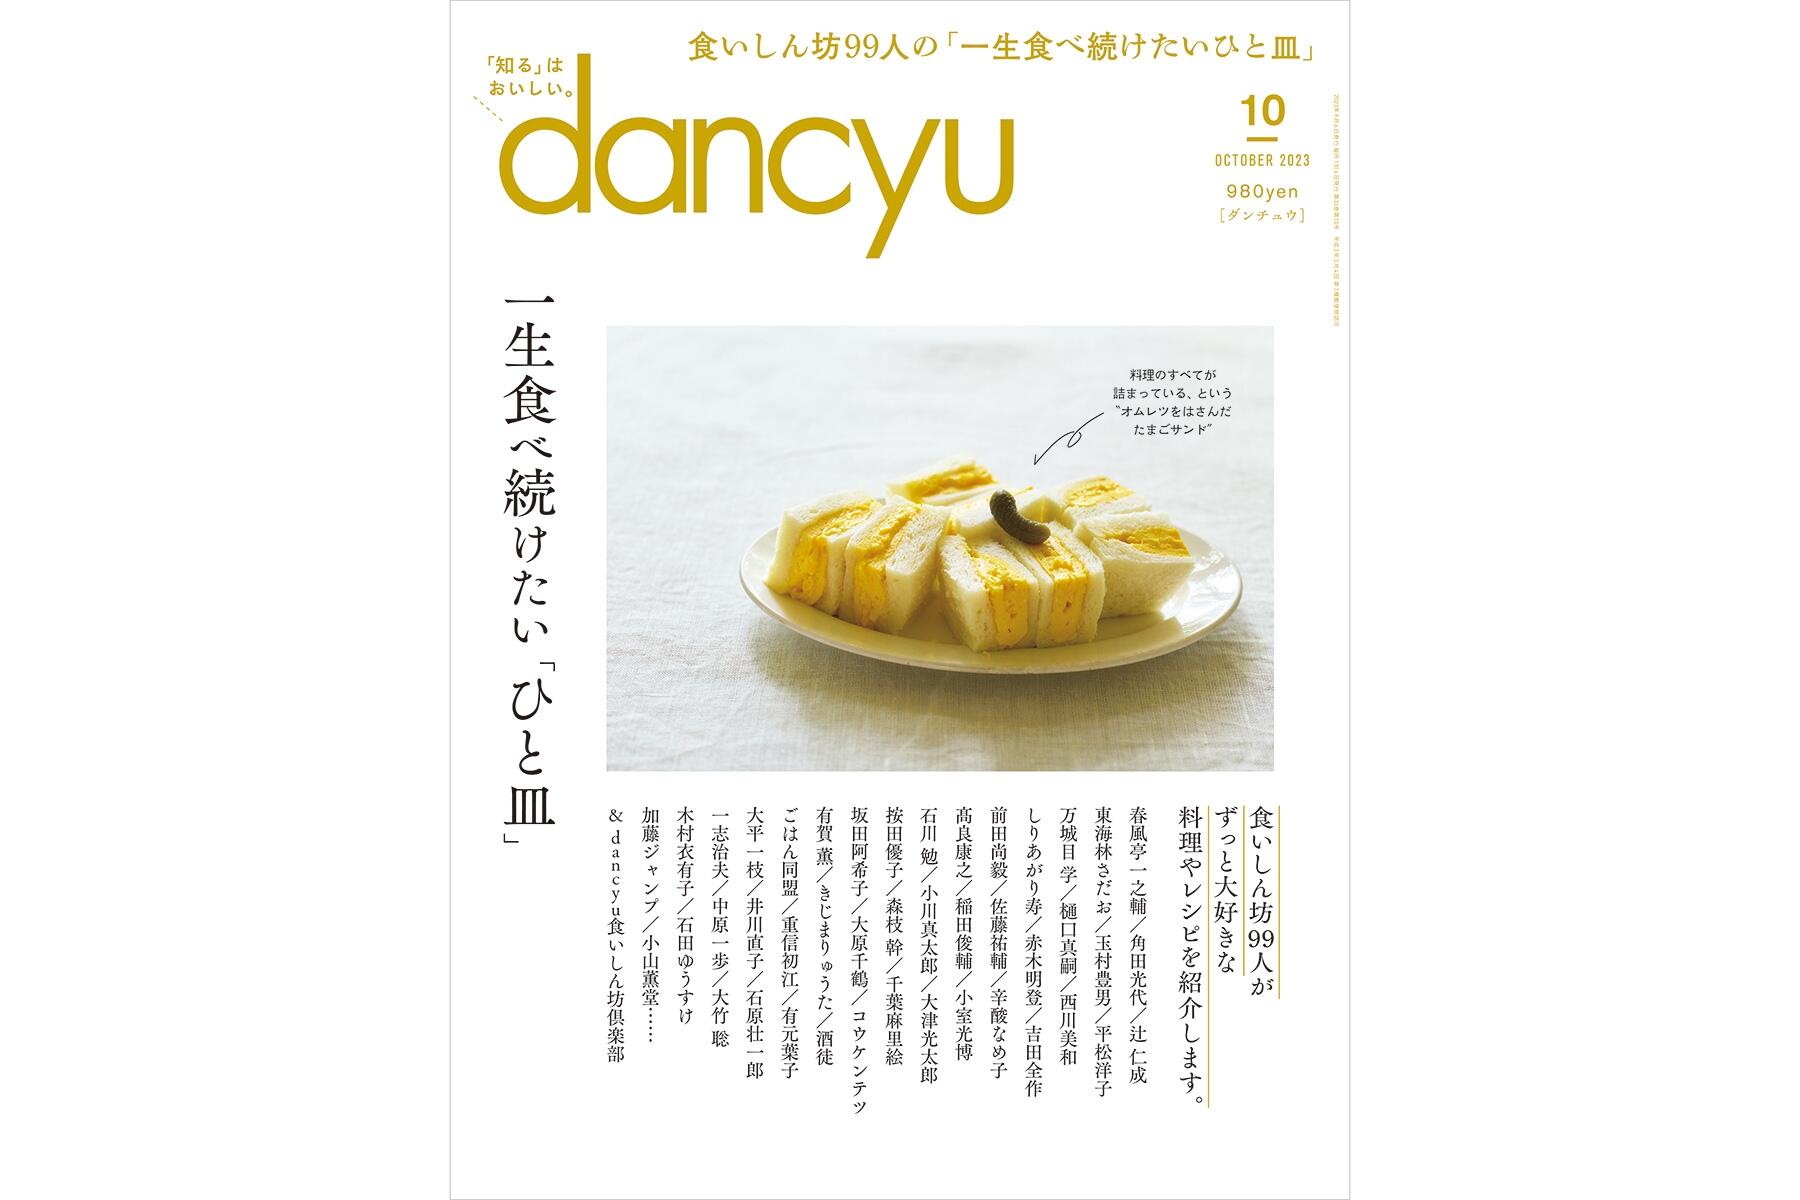 古本）dancyu 1996年11月号 旨い魚が食べたい ダンチュウ プレジデント社 Z03871 19961101発行 - 和書